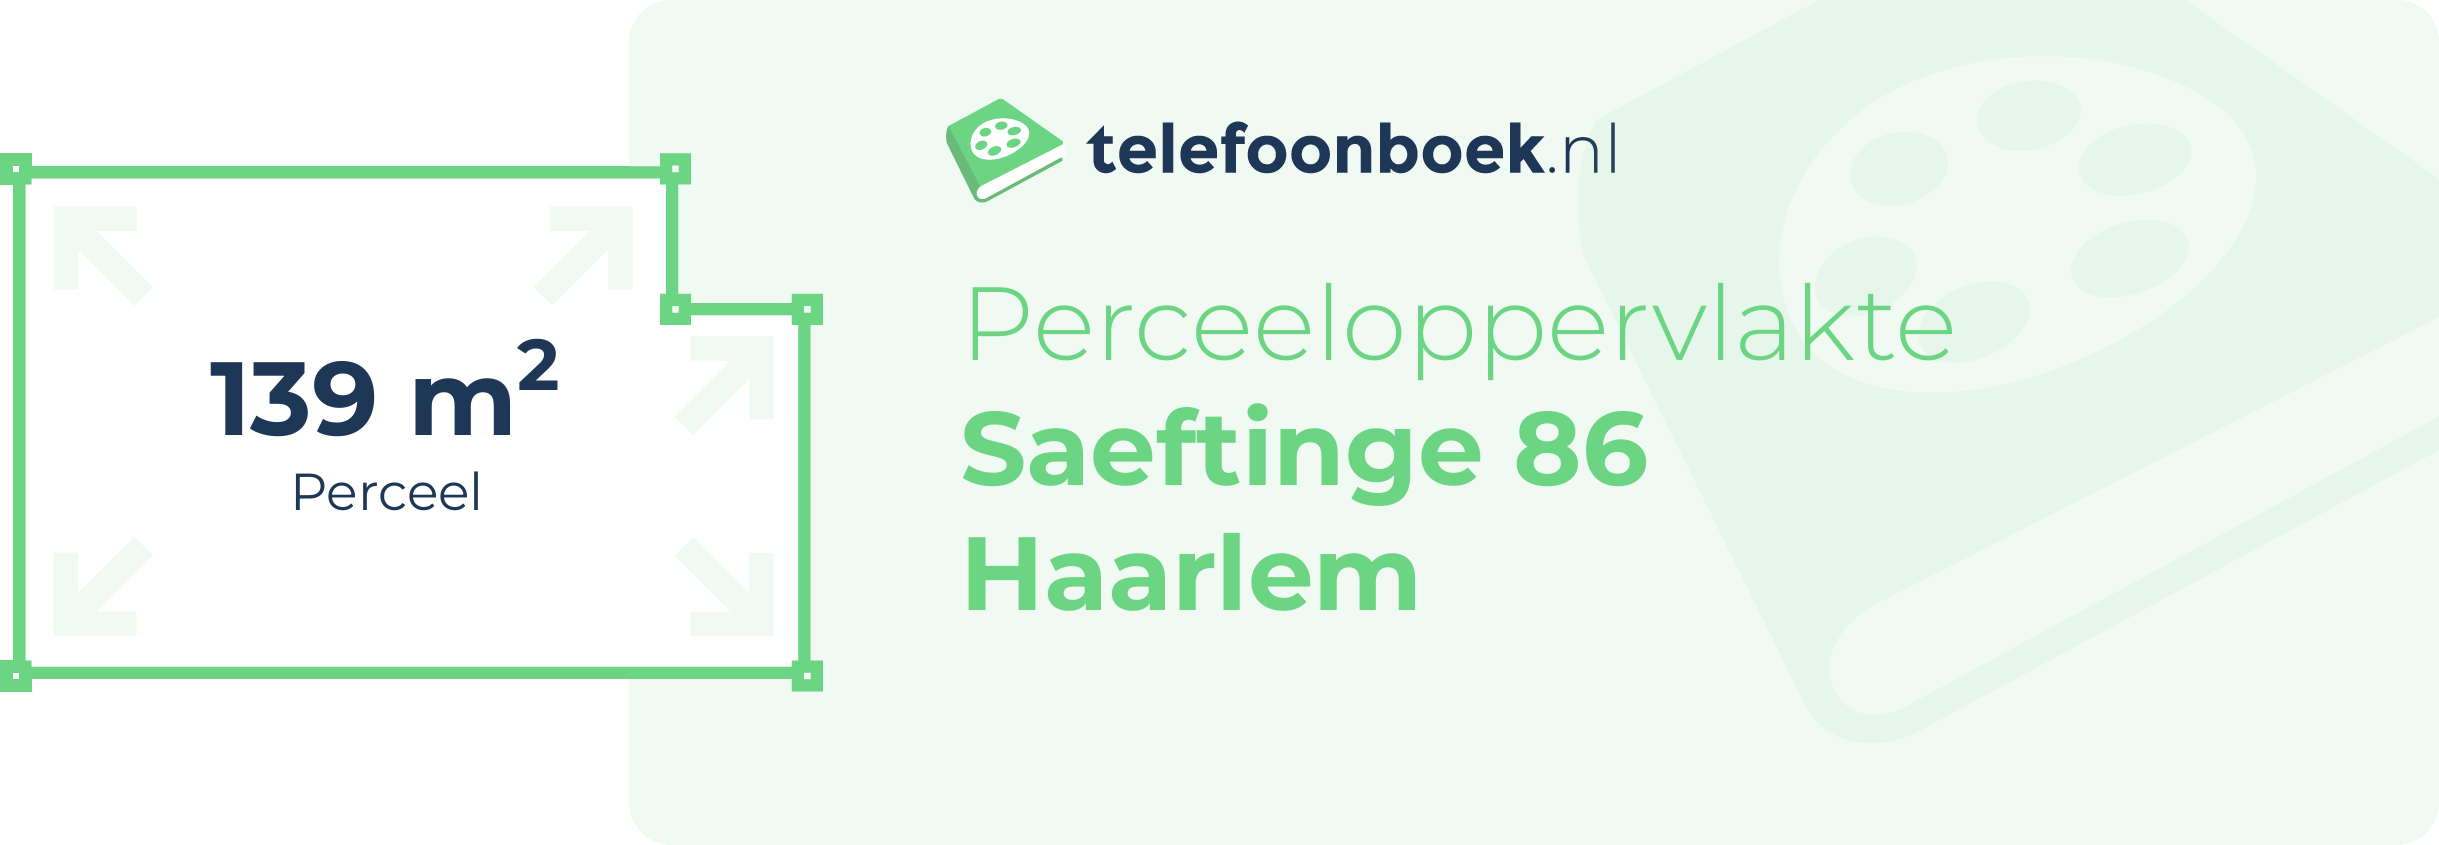 Perceeloppervlakte Saeftinge 86 Haarlem